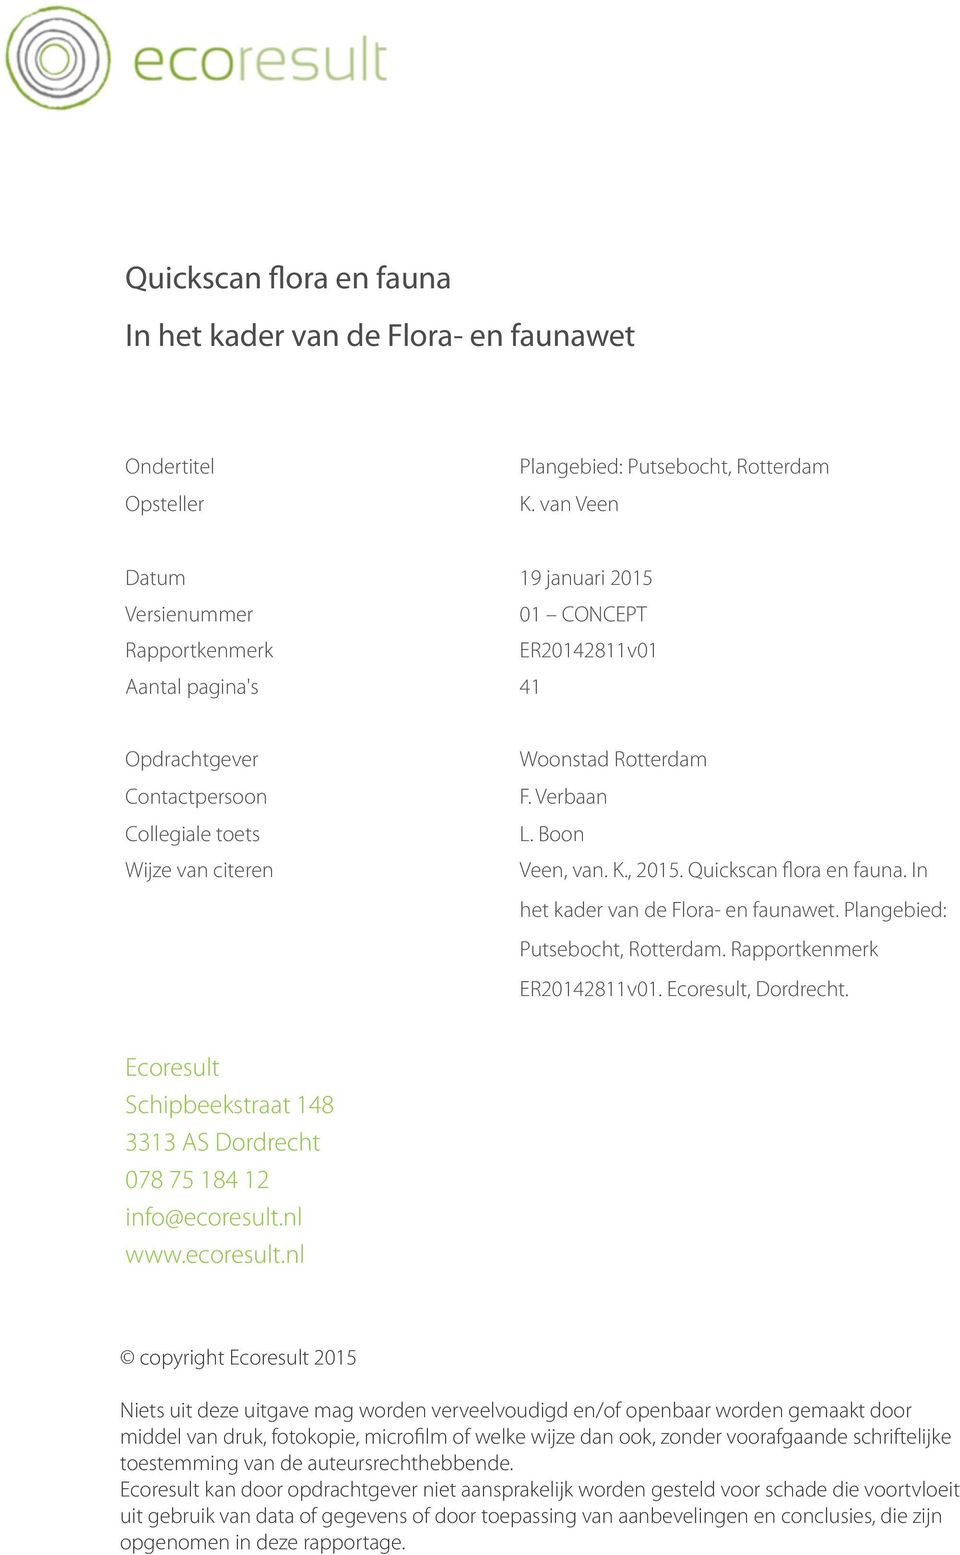 Boon Veen, van. K., 2015. Quickscan flora en fauna. In het kader van de Flora- en faunawet. Plangebied: Putsebocht, Rotterdam. Rapportkenmerk ER20142811v01. Ecoresult, Dordrecht.